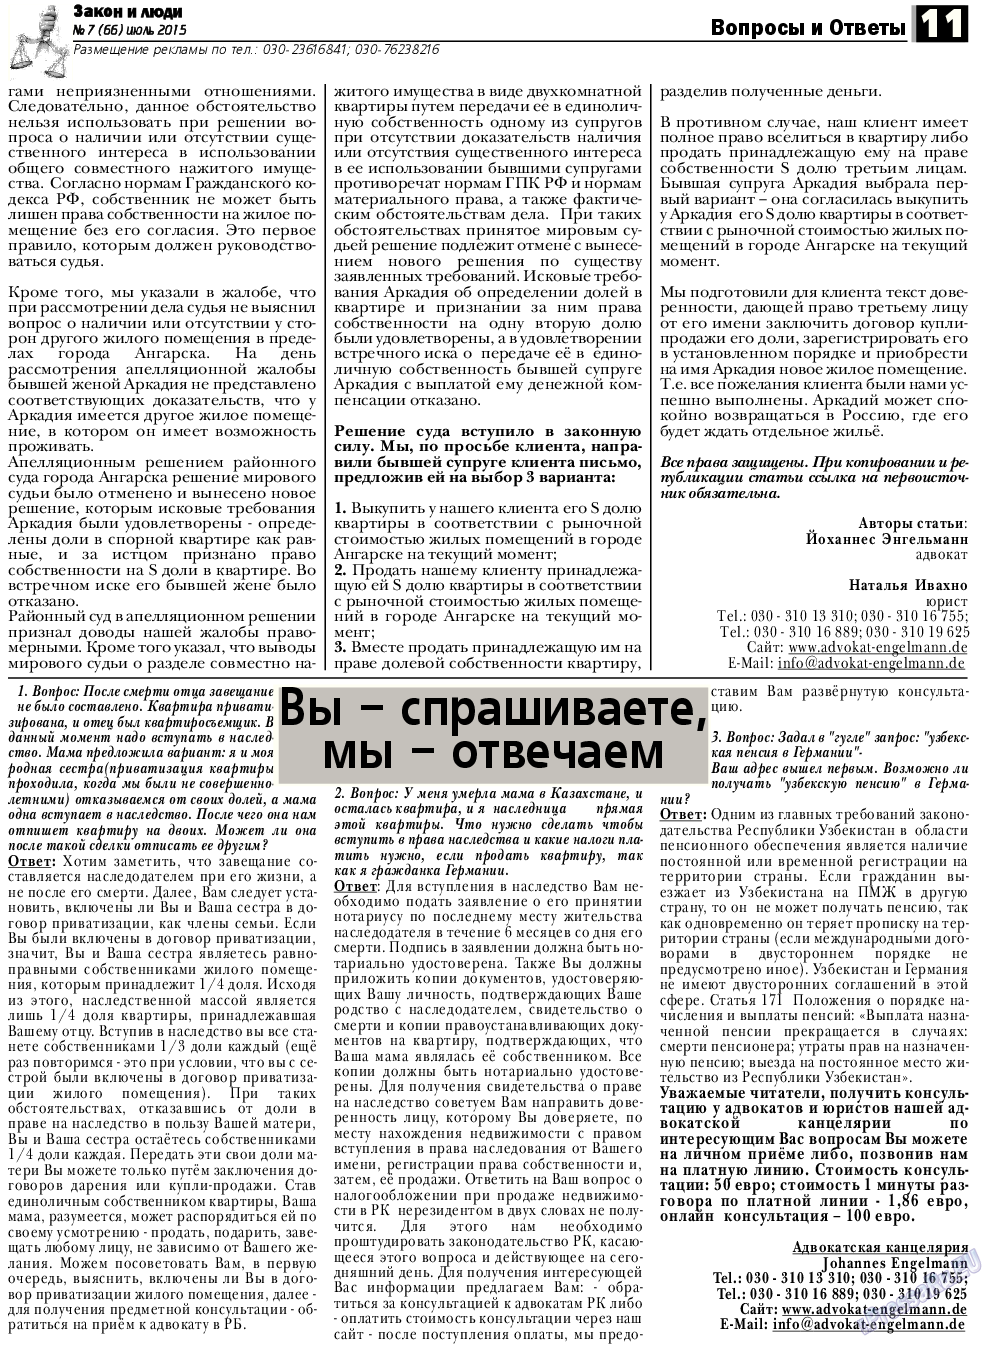 Закон и люди, газета. 2015 №7 стр.11